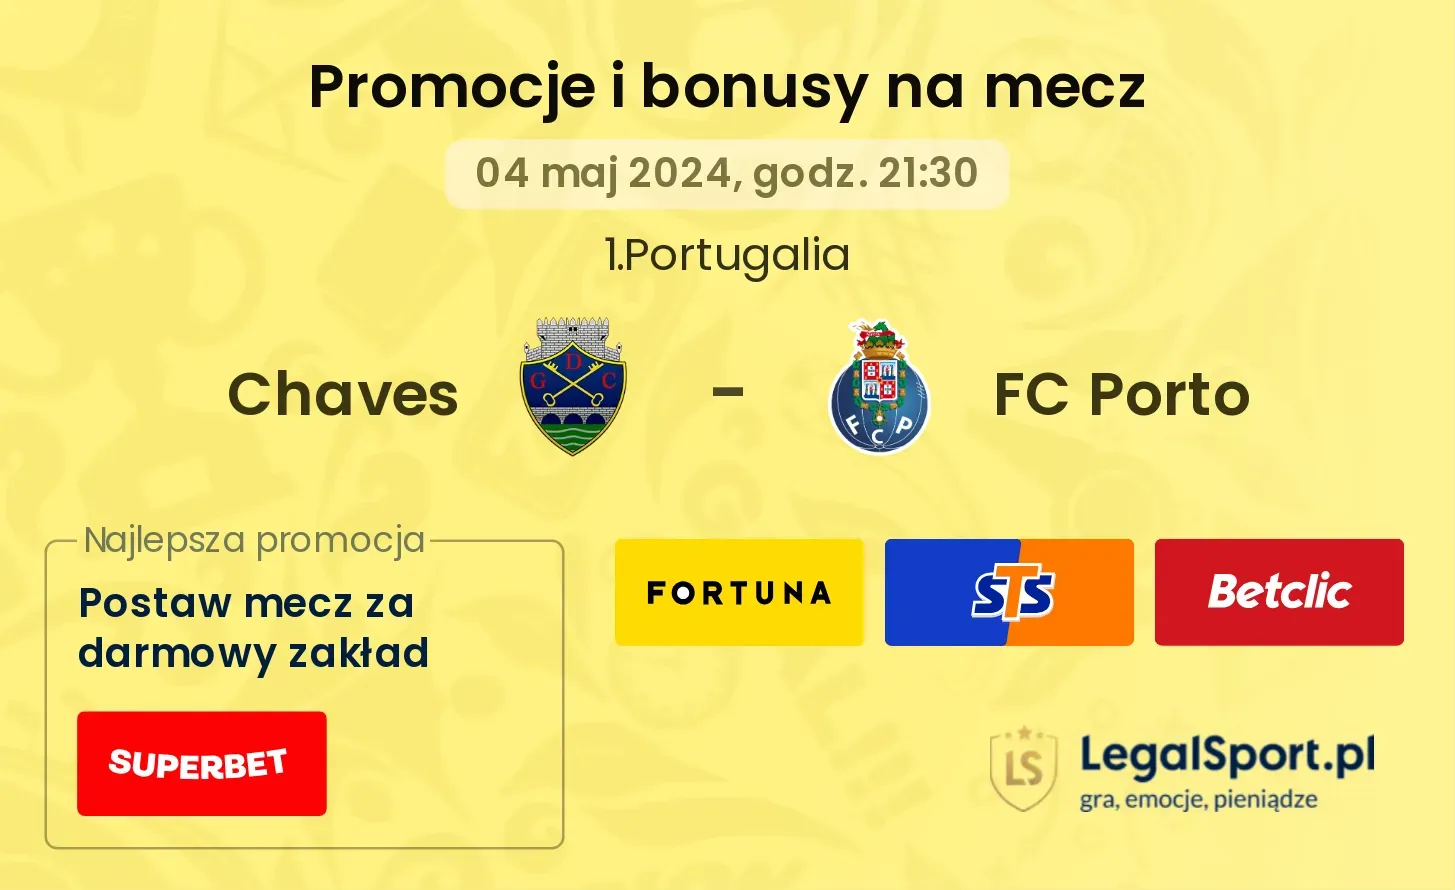 Chaves - FC Porto promocje bonusy na mecz